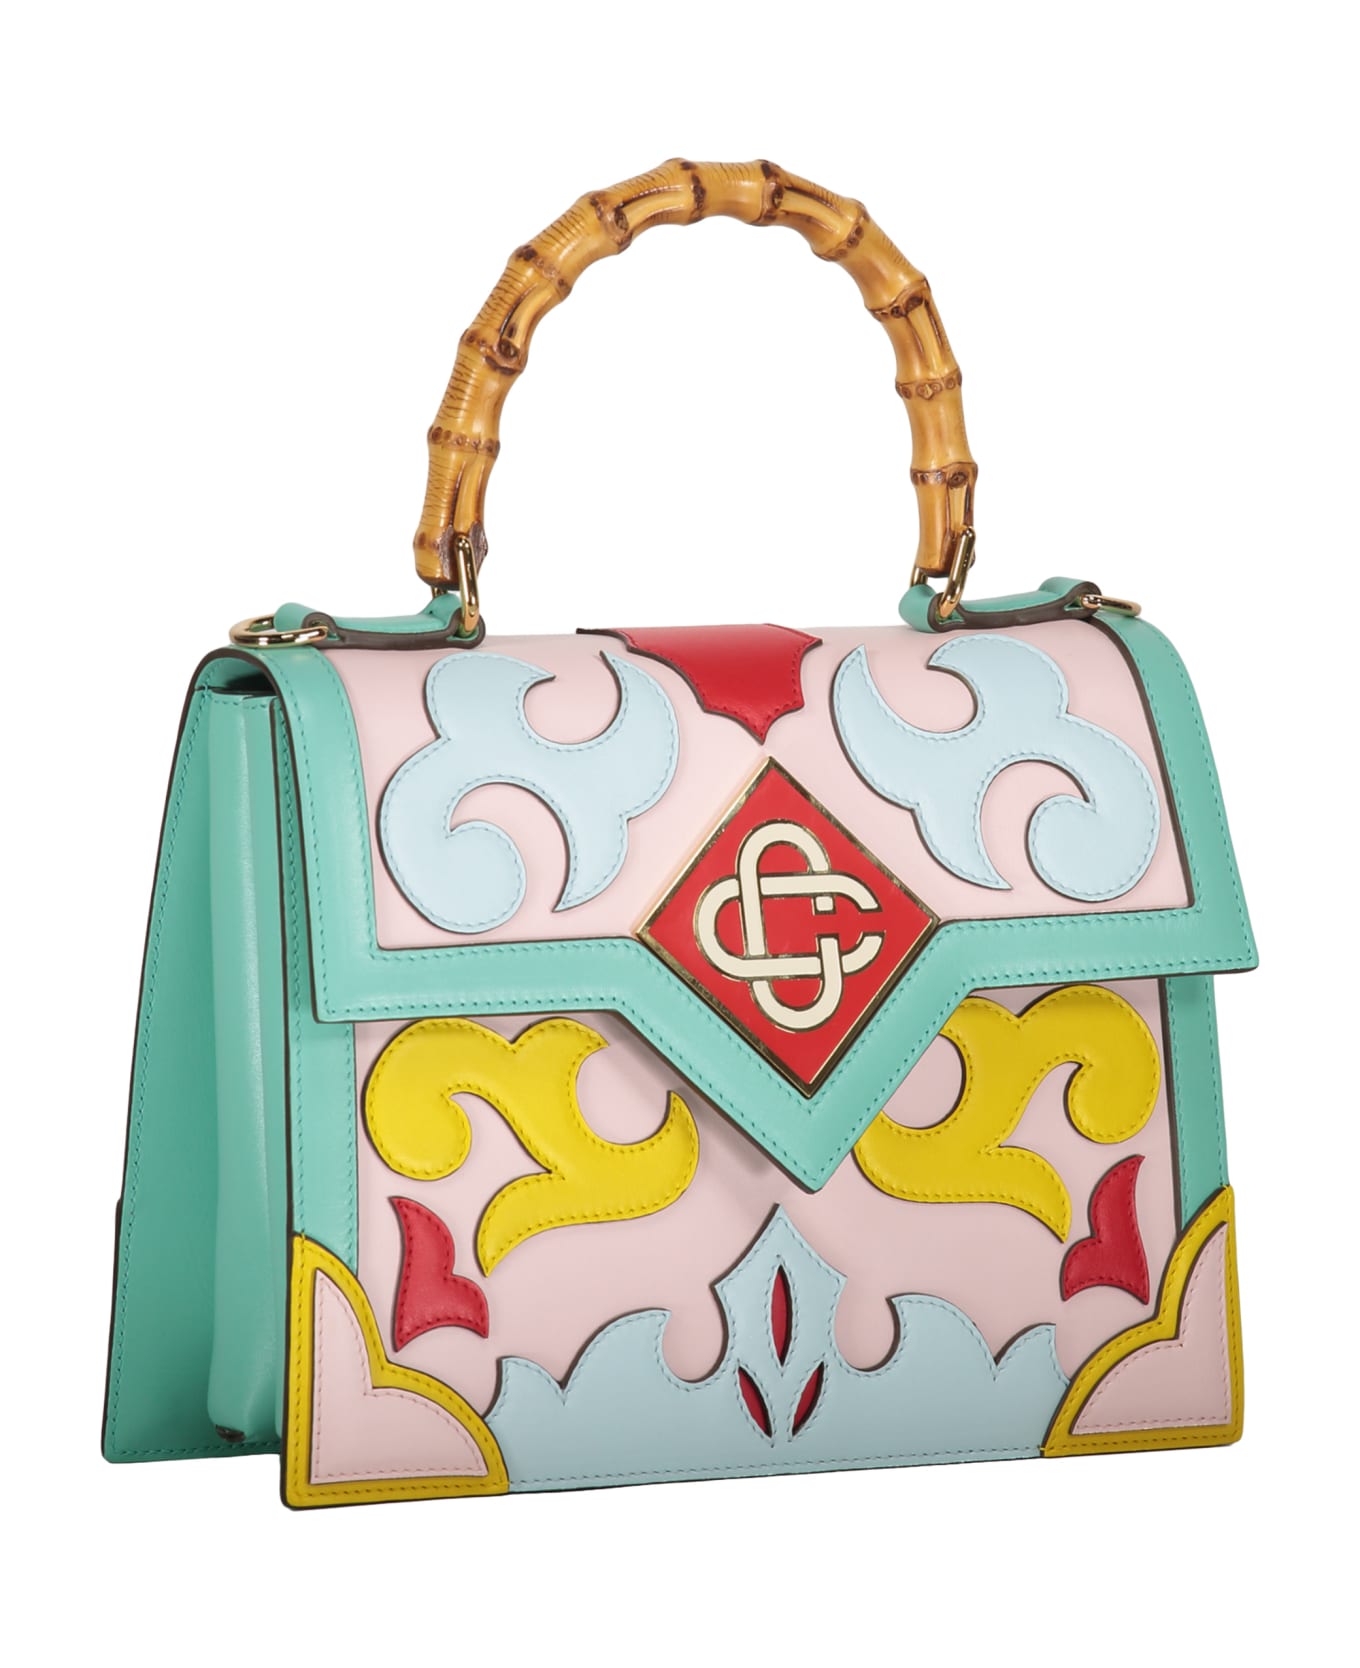 Casablanca Leather Handbag - Multicolor